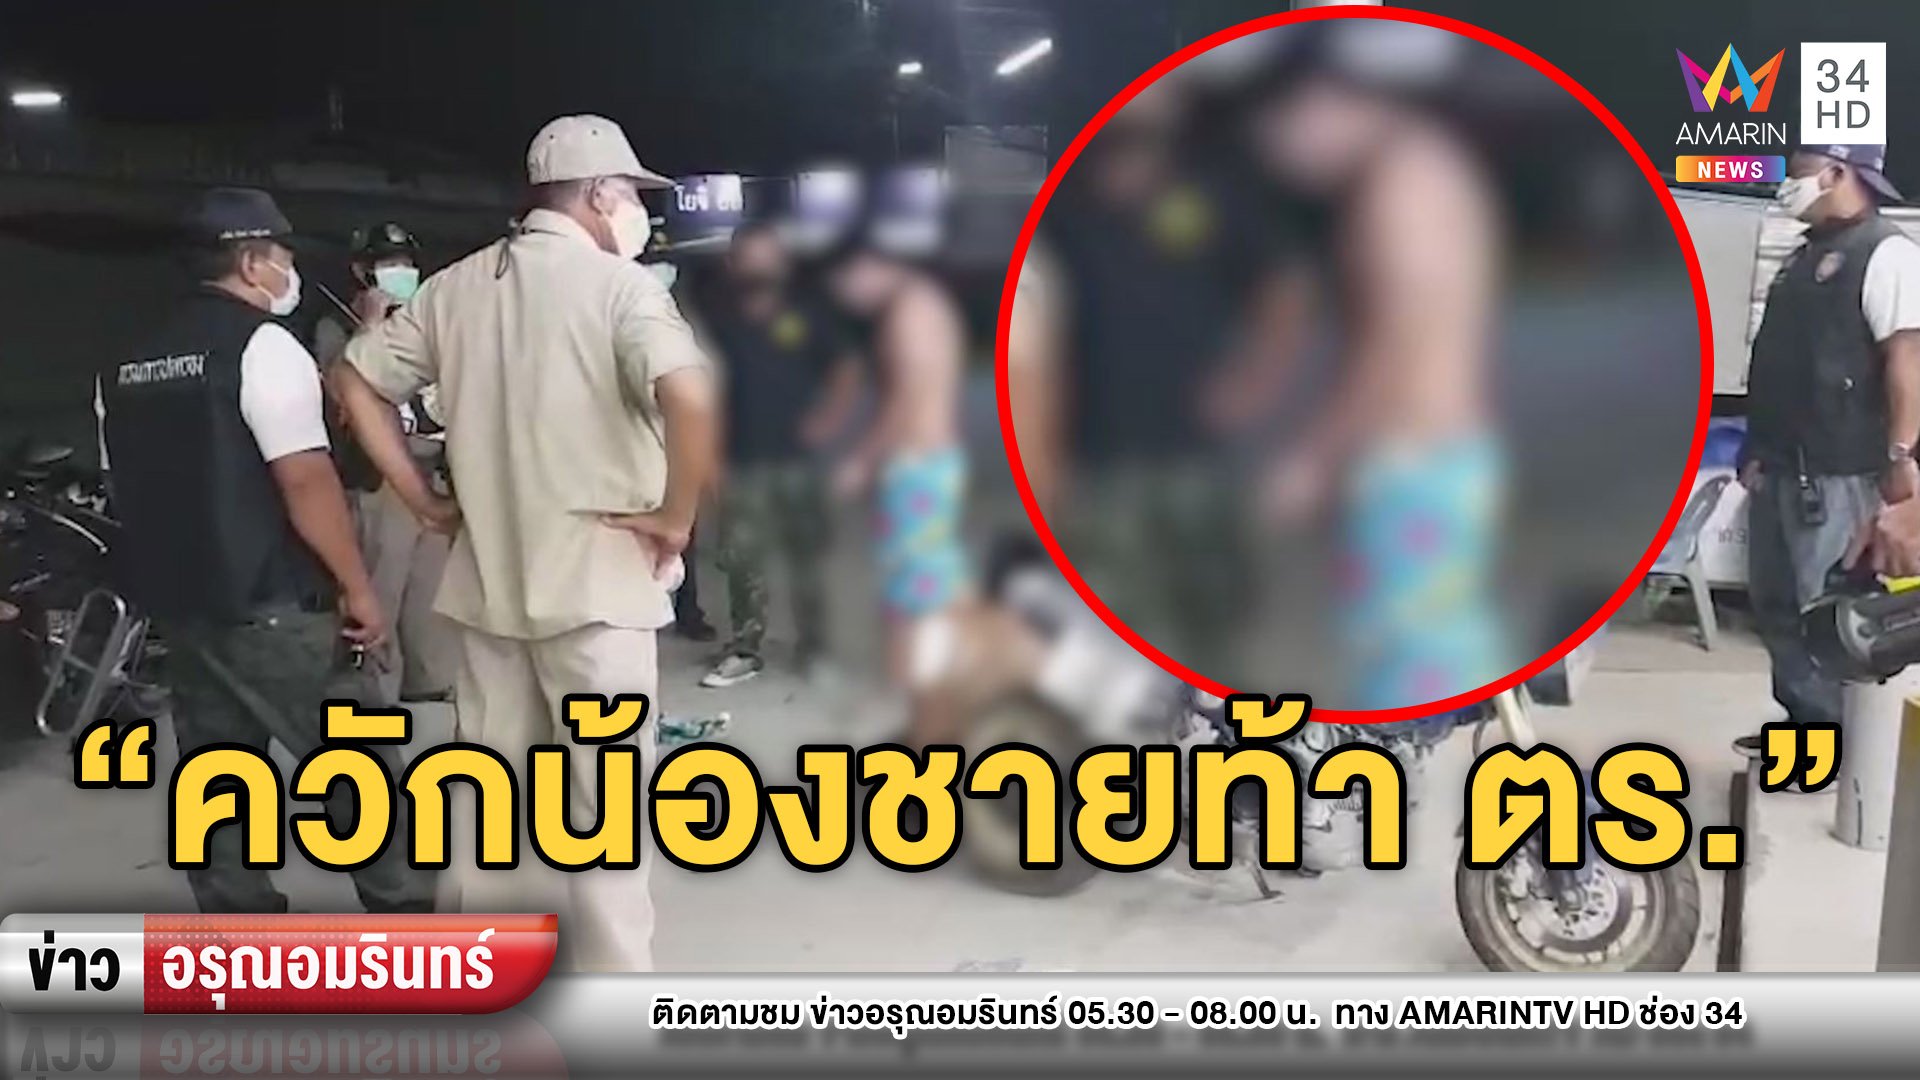 2 หนุ่มเมาฝืนเคอร์ฟิว ควักอวัยวะเพศท้าทาย ตำรวจ | ข่าวอรุณอมรินทร์ | 13 เม.ย. 63 | AMARIN TVHD34